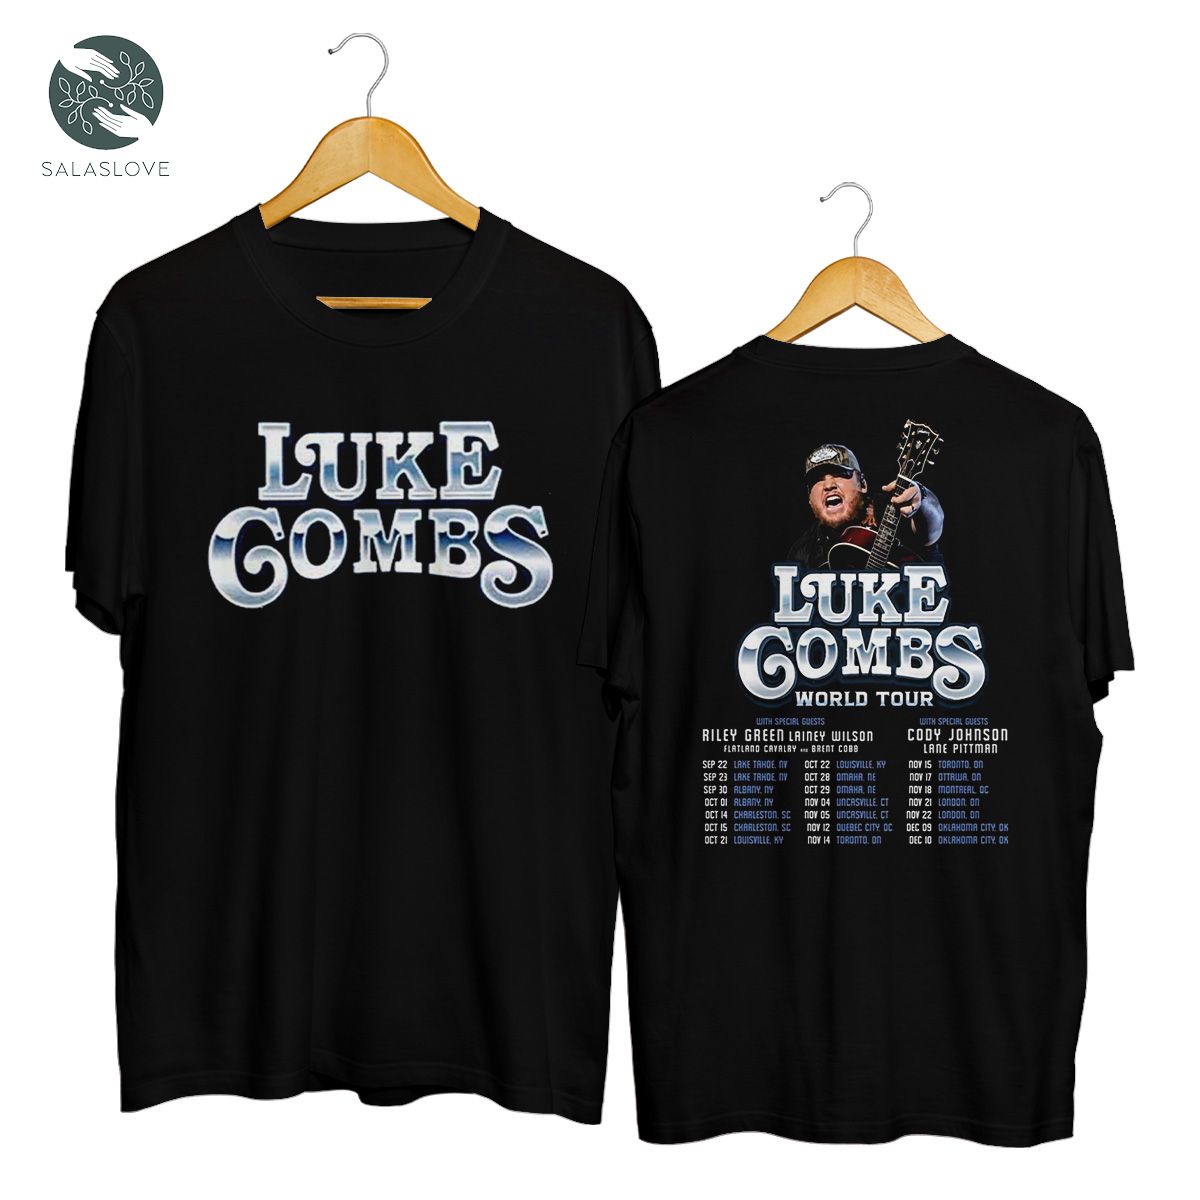 Luke Combs World Tour 2022 Shirt, Cody Johnson Music Shirt